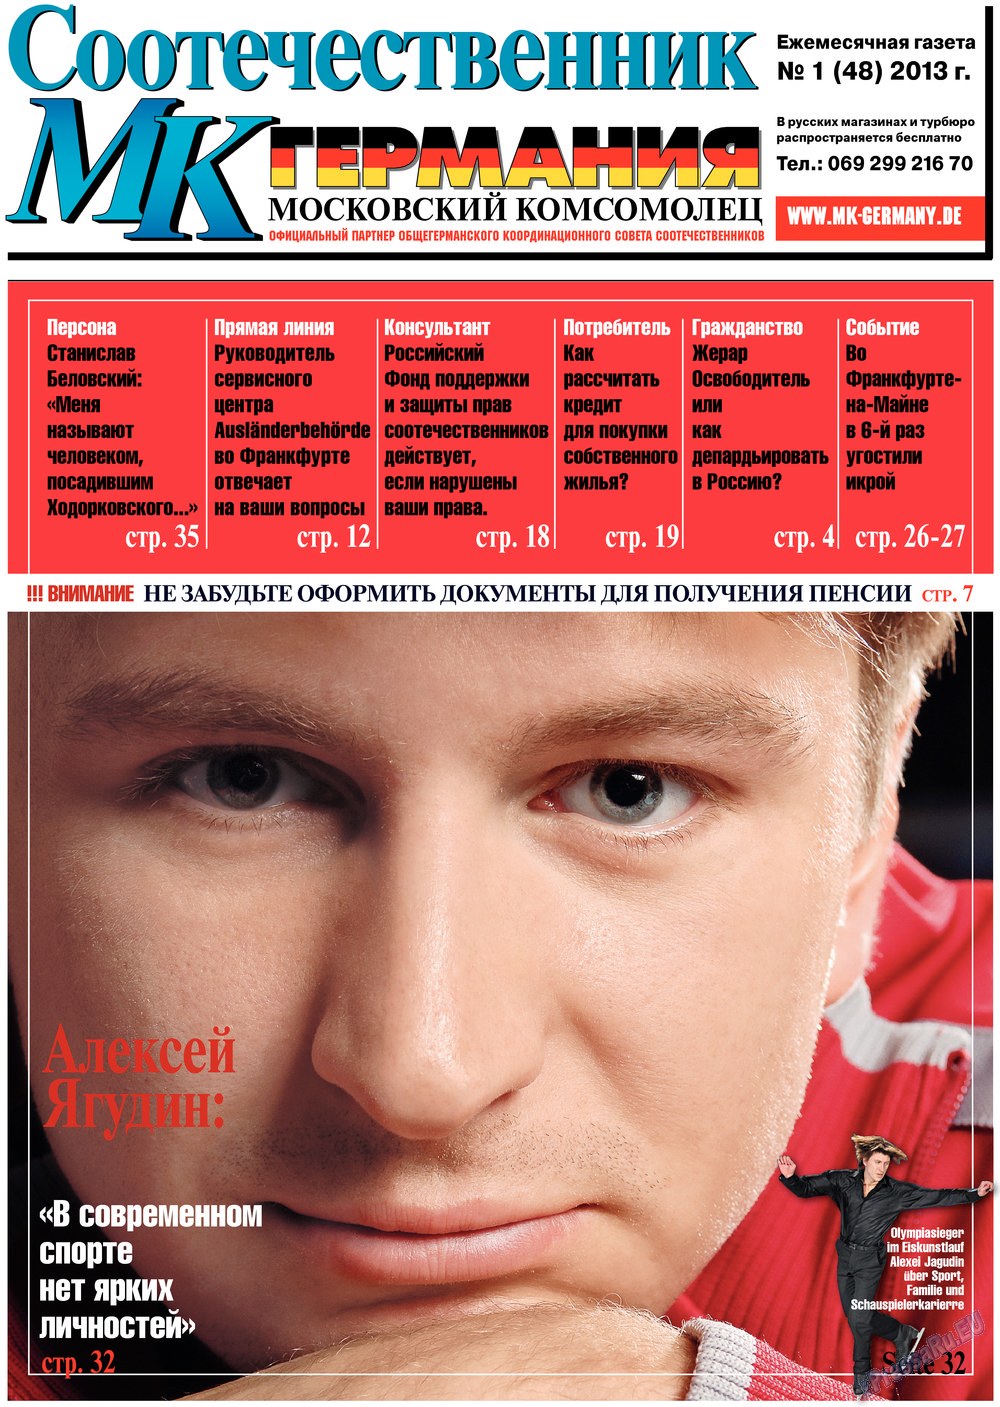 MK-Germany Landsleute (Zeitung). 2013 Jahr, Ausgabe 1, Seite 1